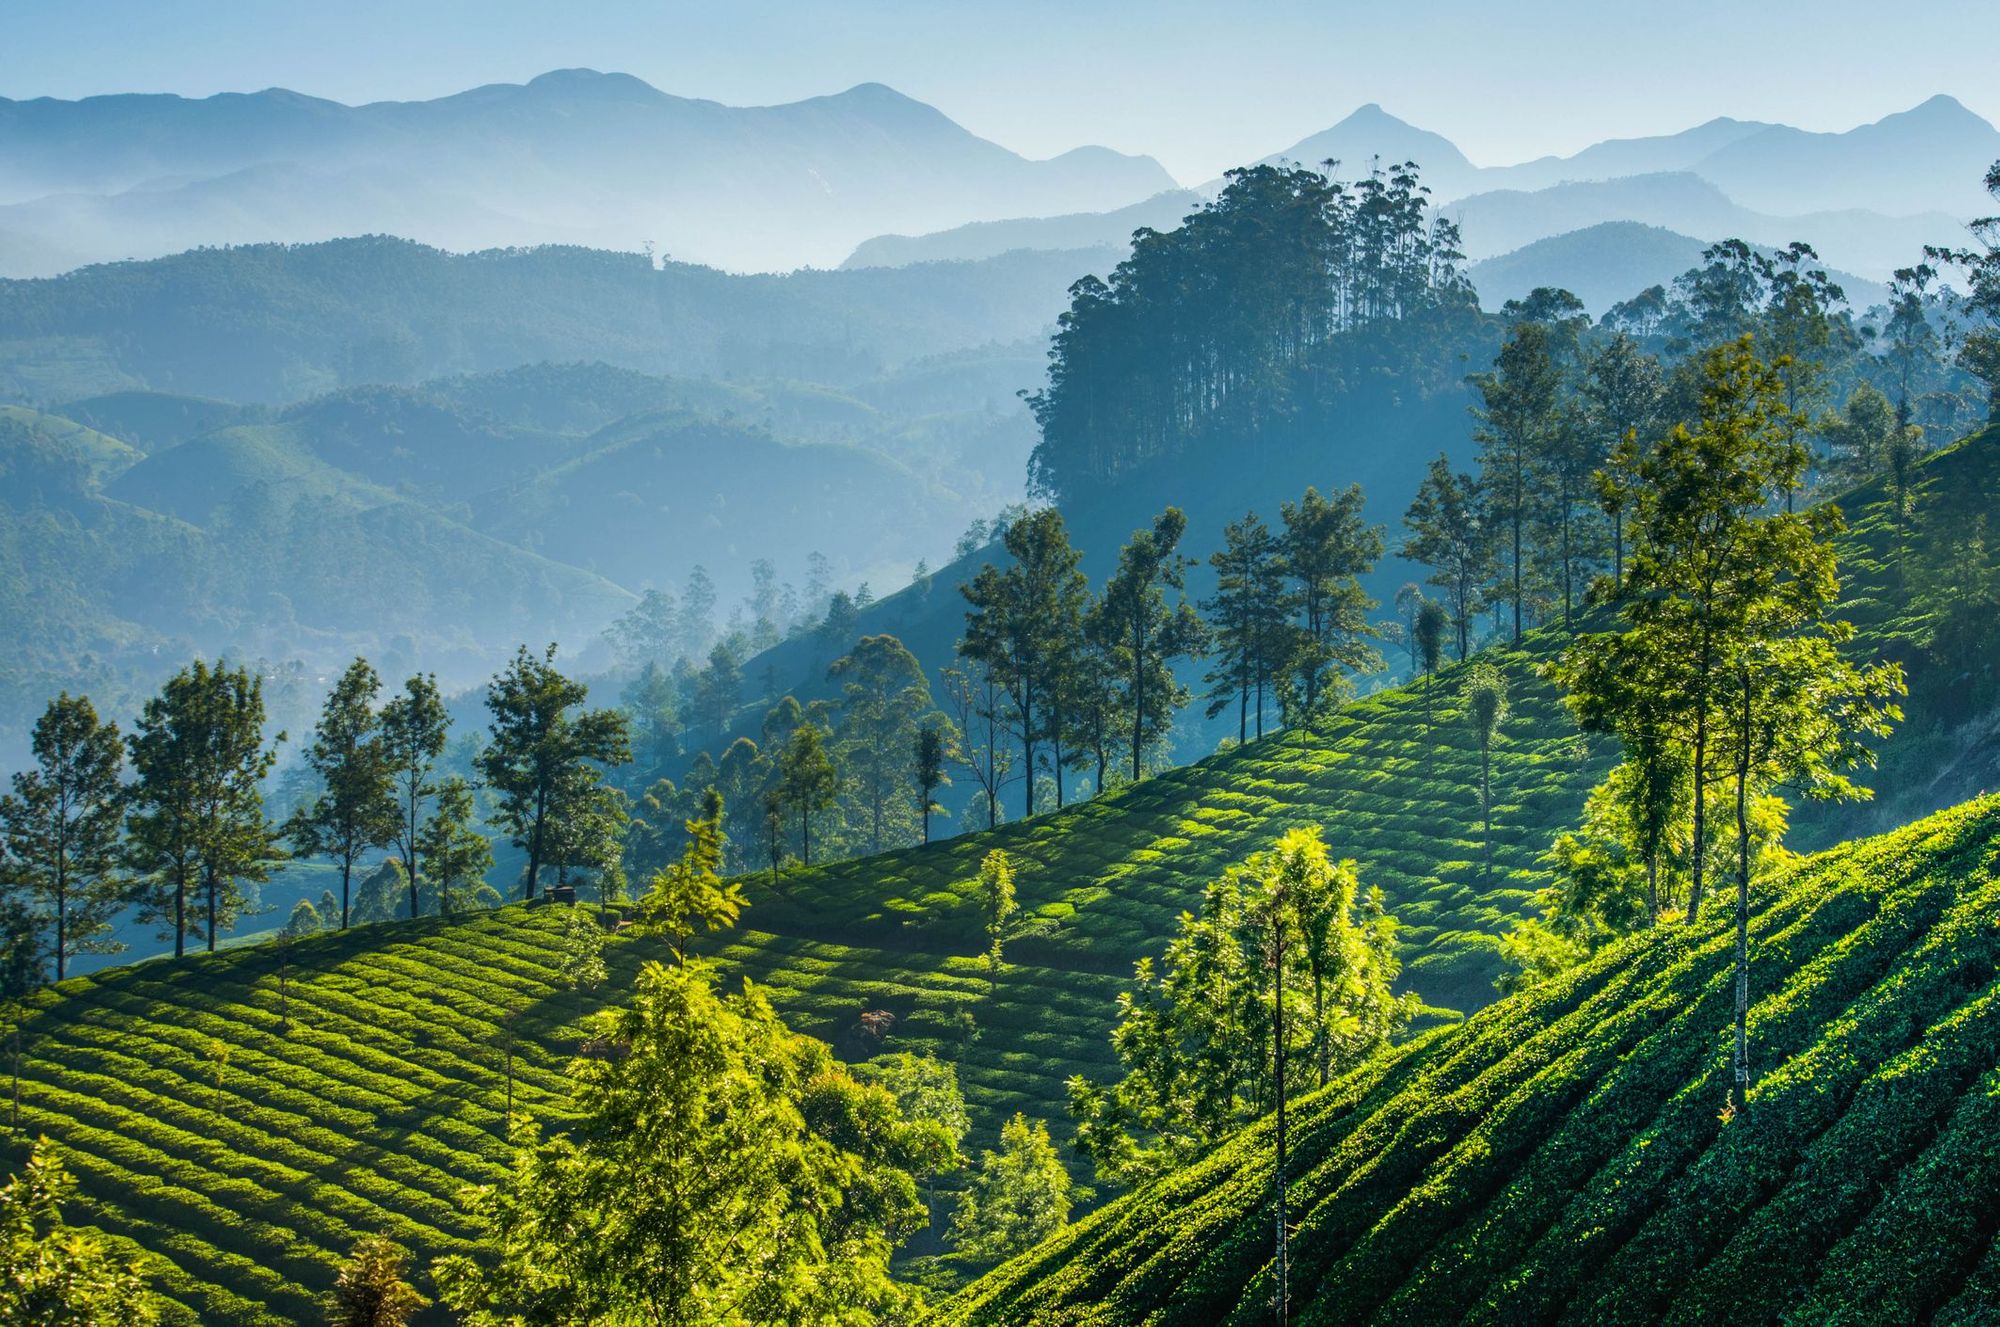 The tea plantations of Munnar, India